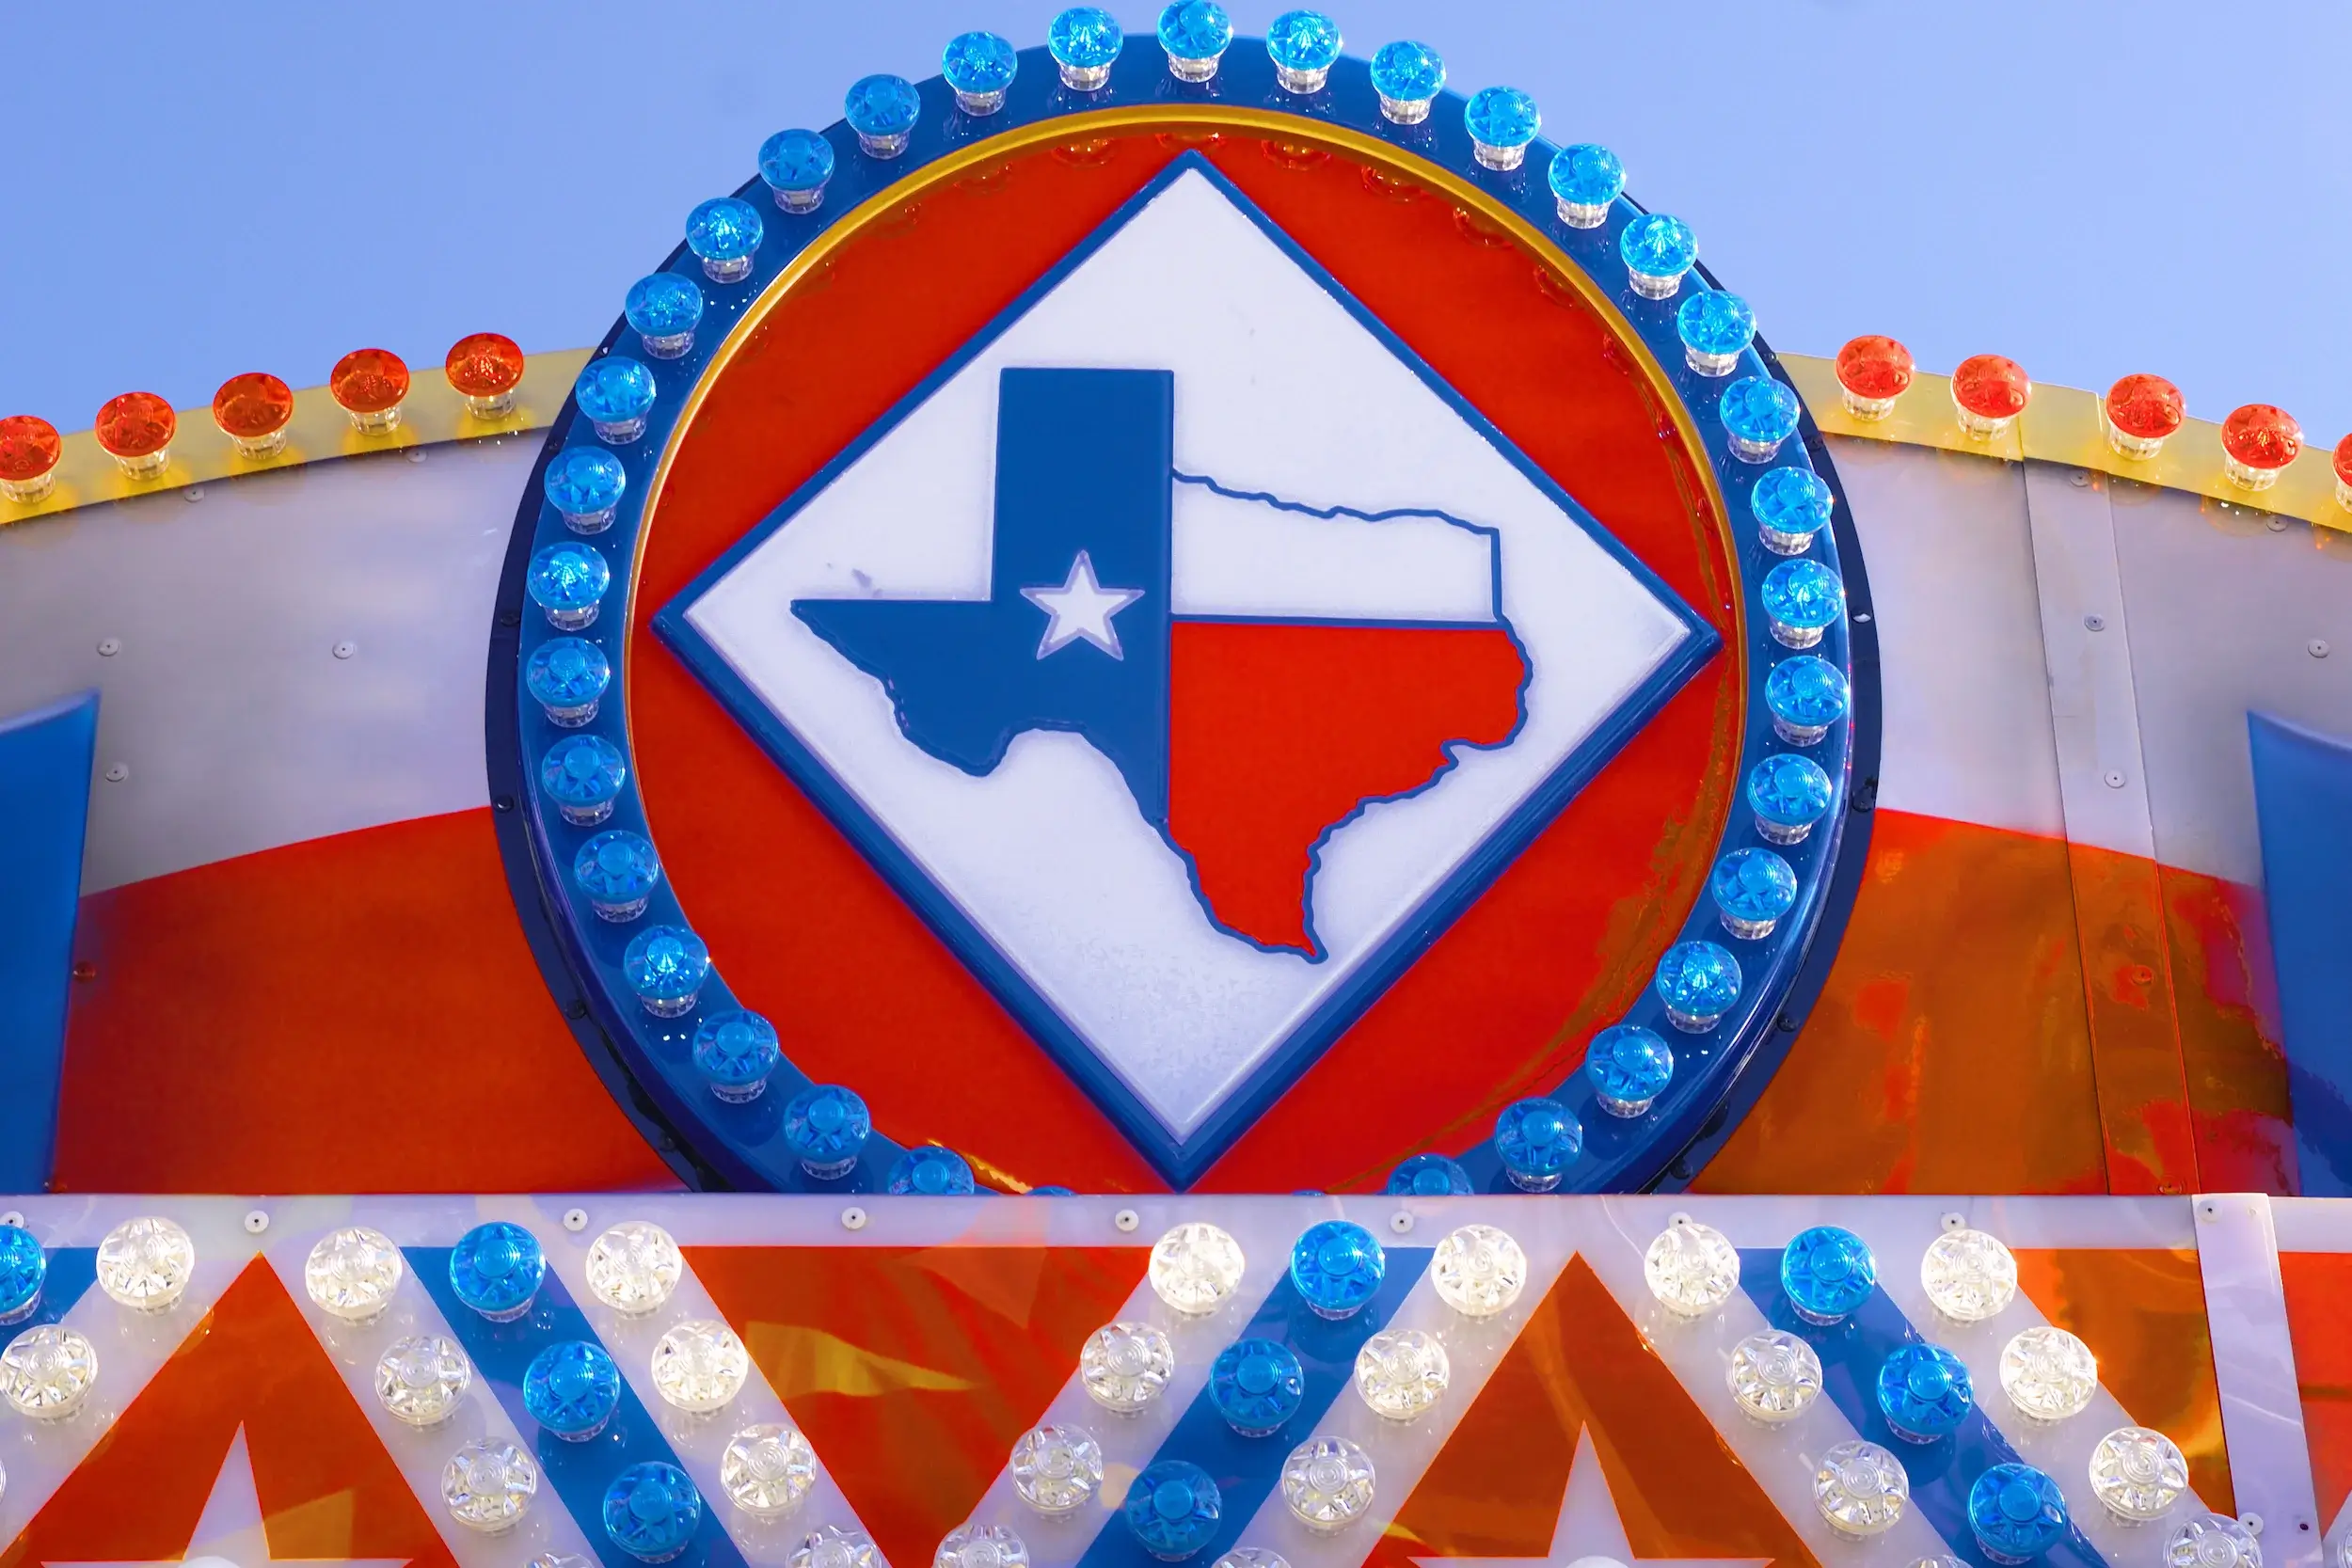 Dallas, Texas State Fair